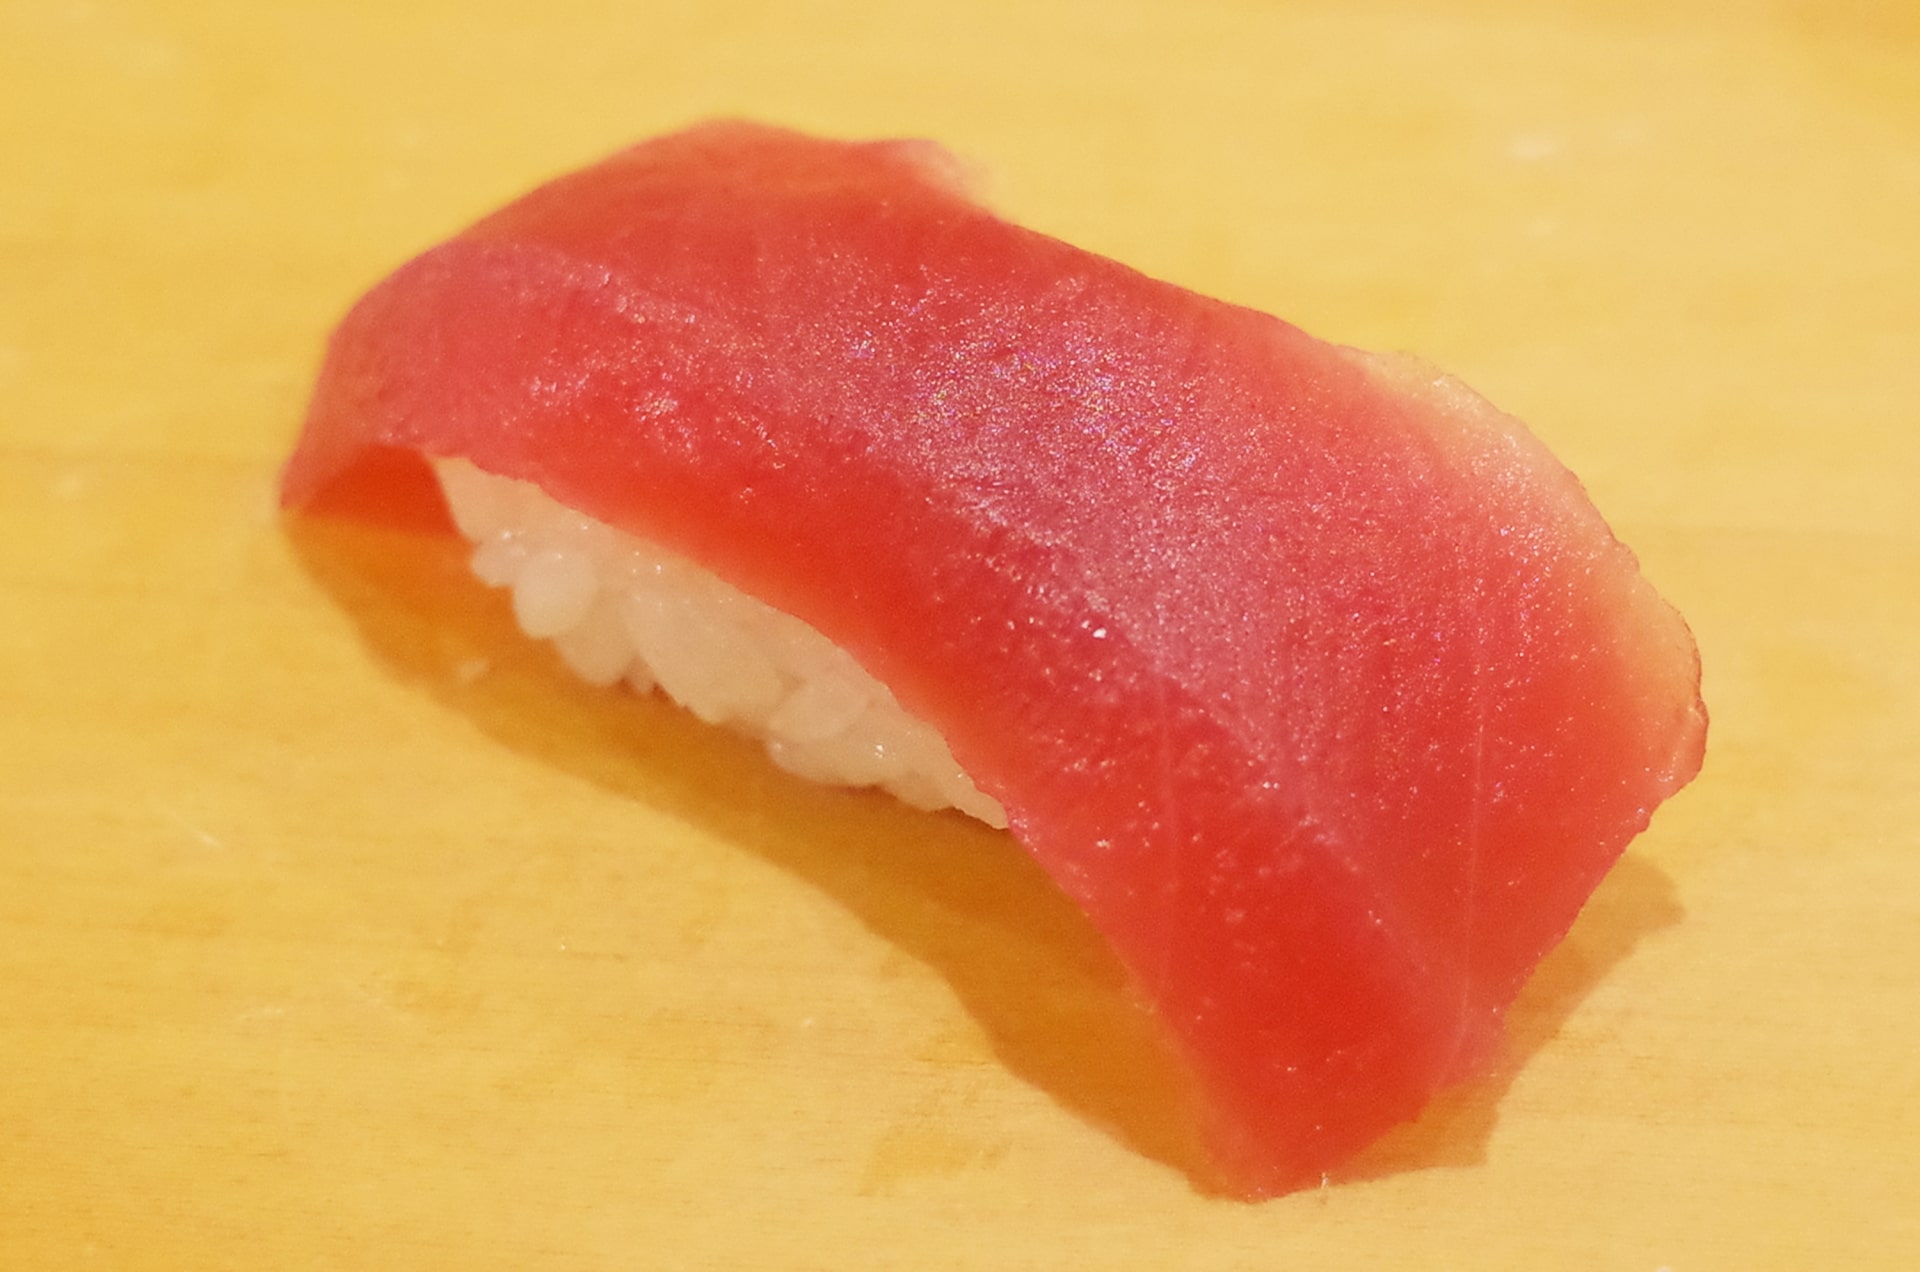 maguro sushi